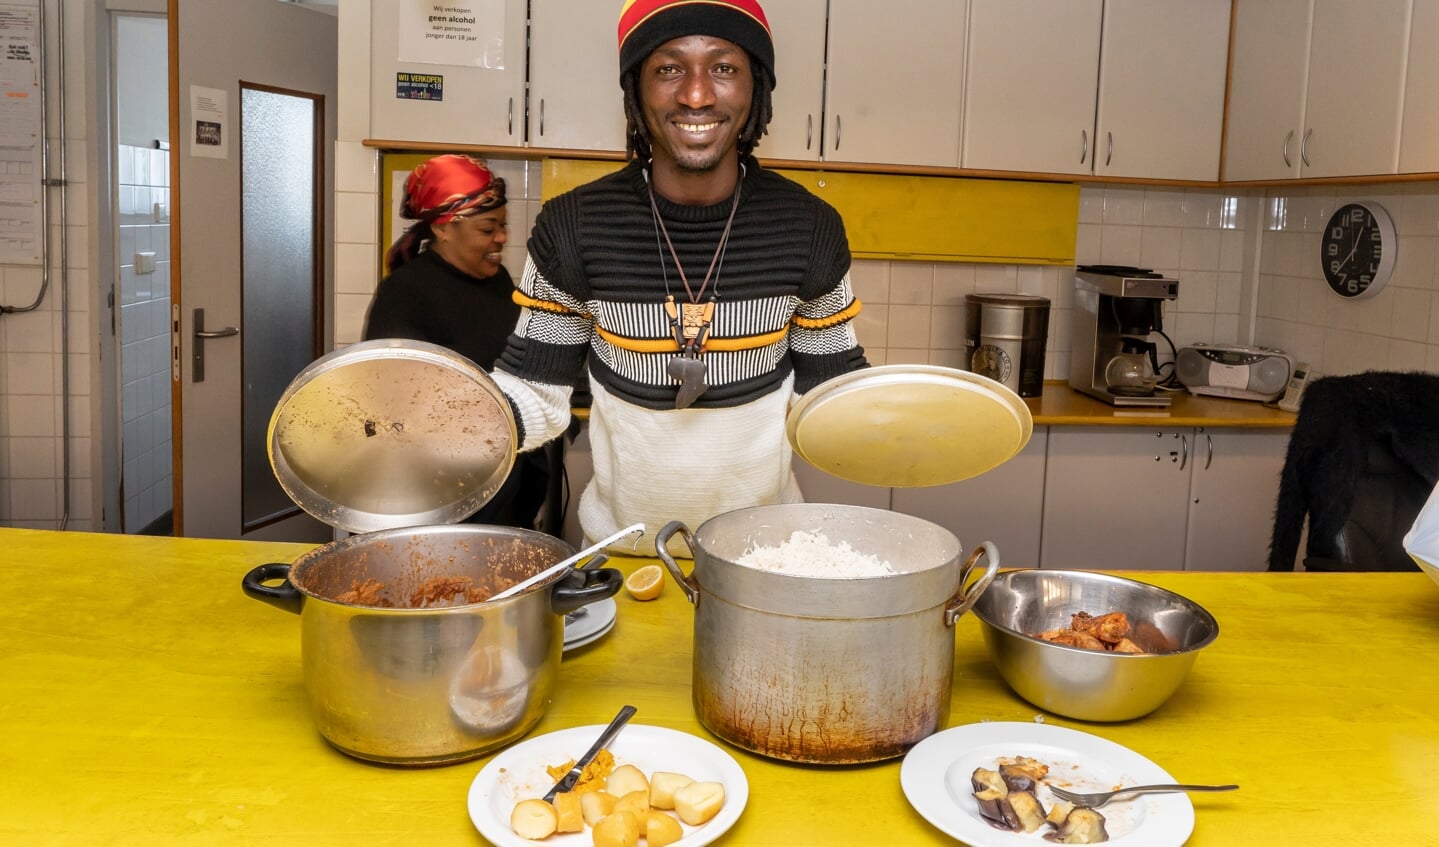 'Bro, help jezelf', vrijwilliger Lamini schept voor bezoekers eten op.